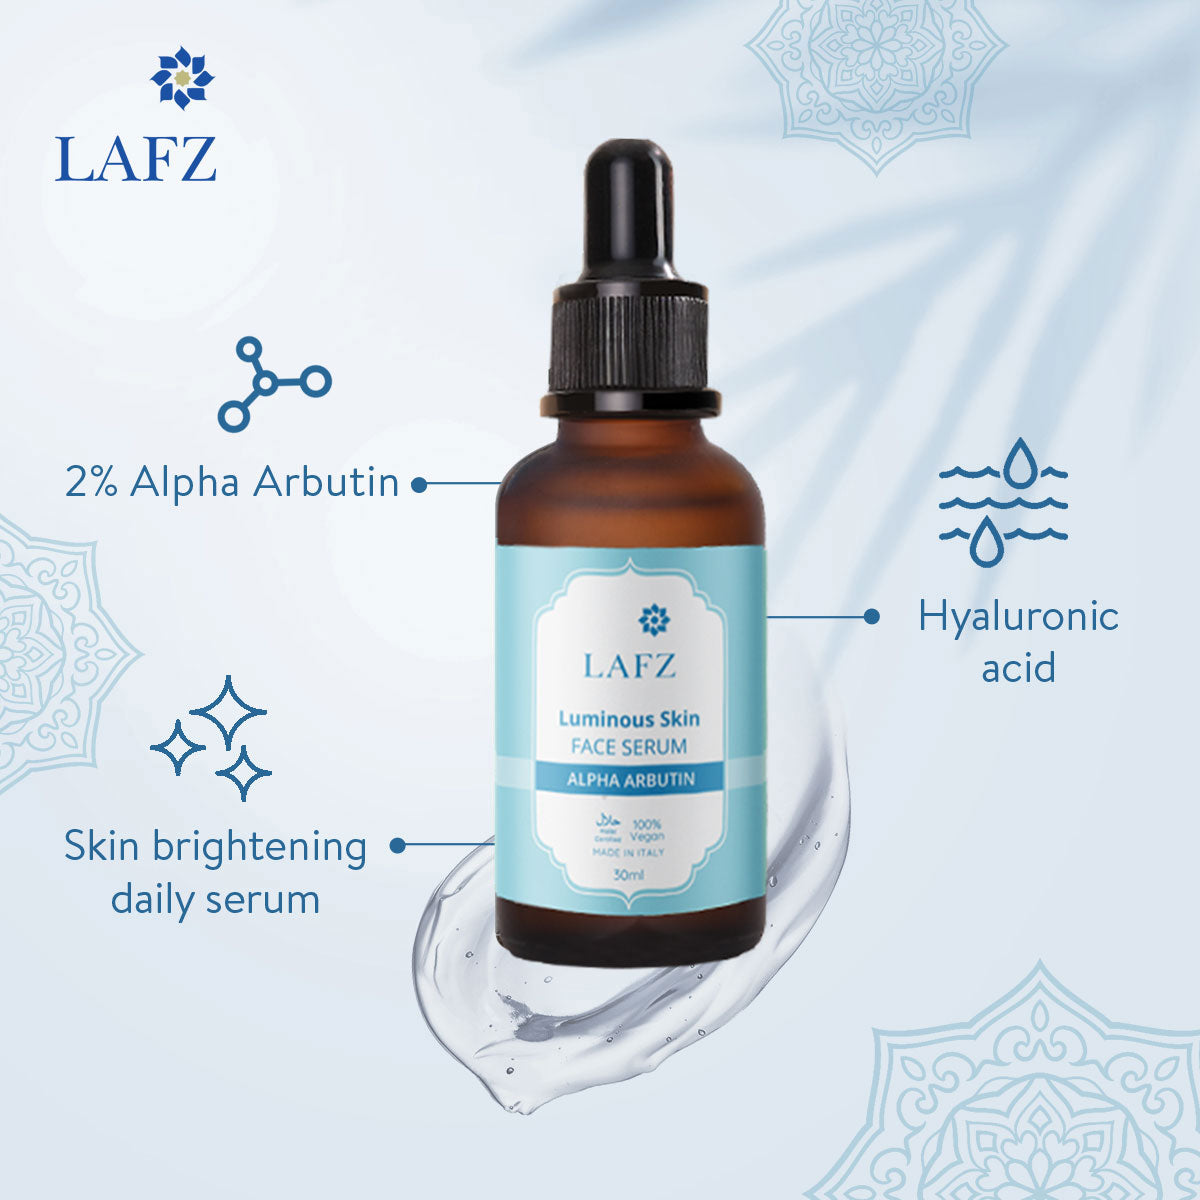 Lafz Luminous Skin Face Serum (30ml) - Alpha Arbutin